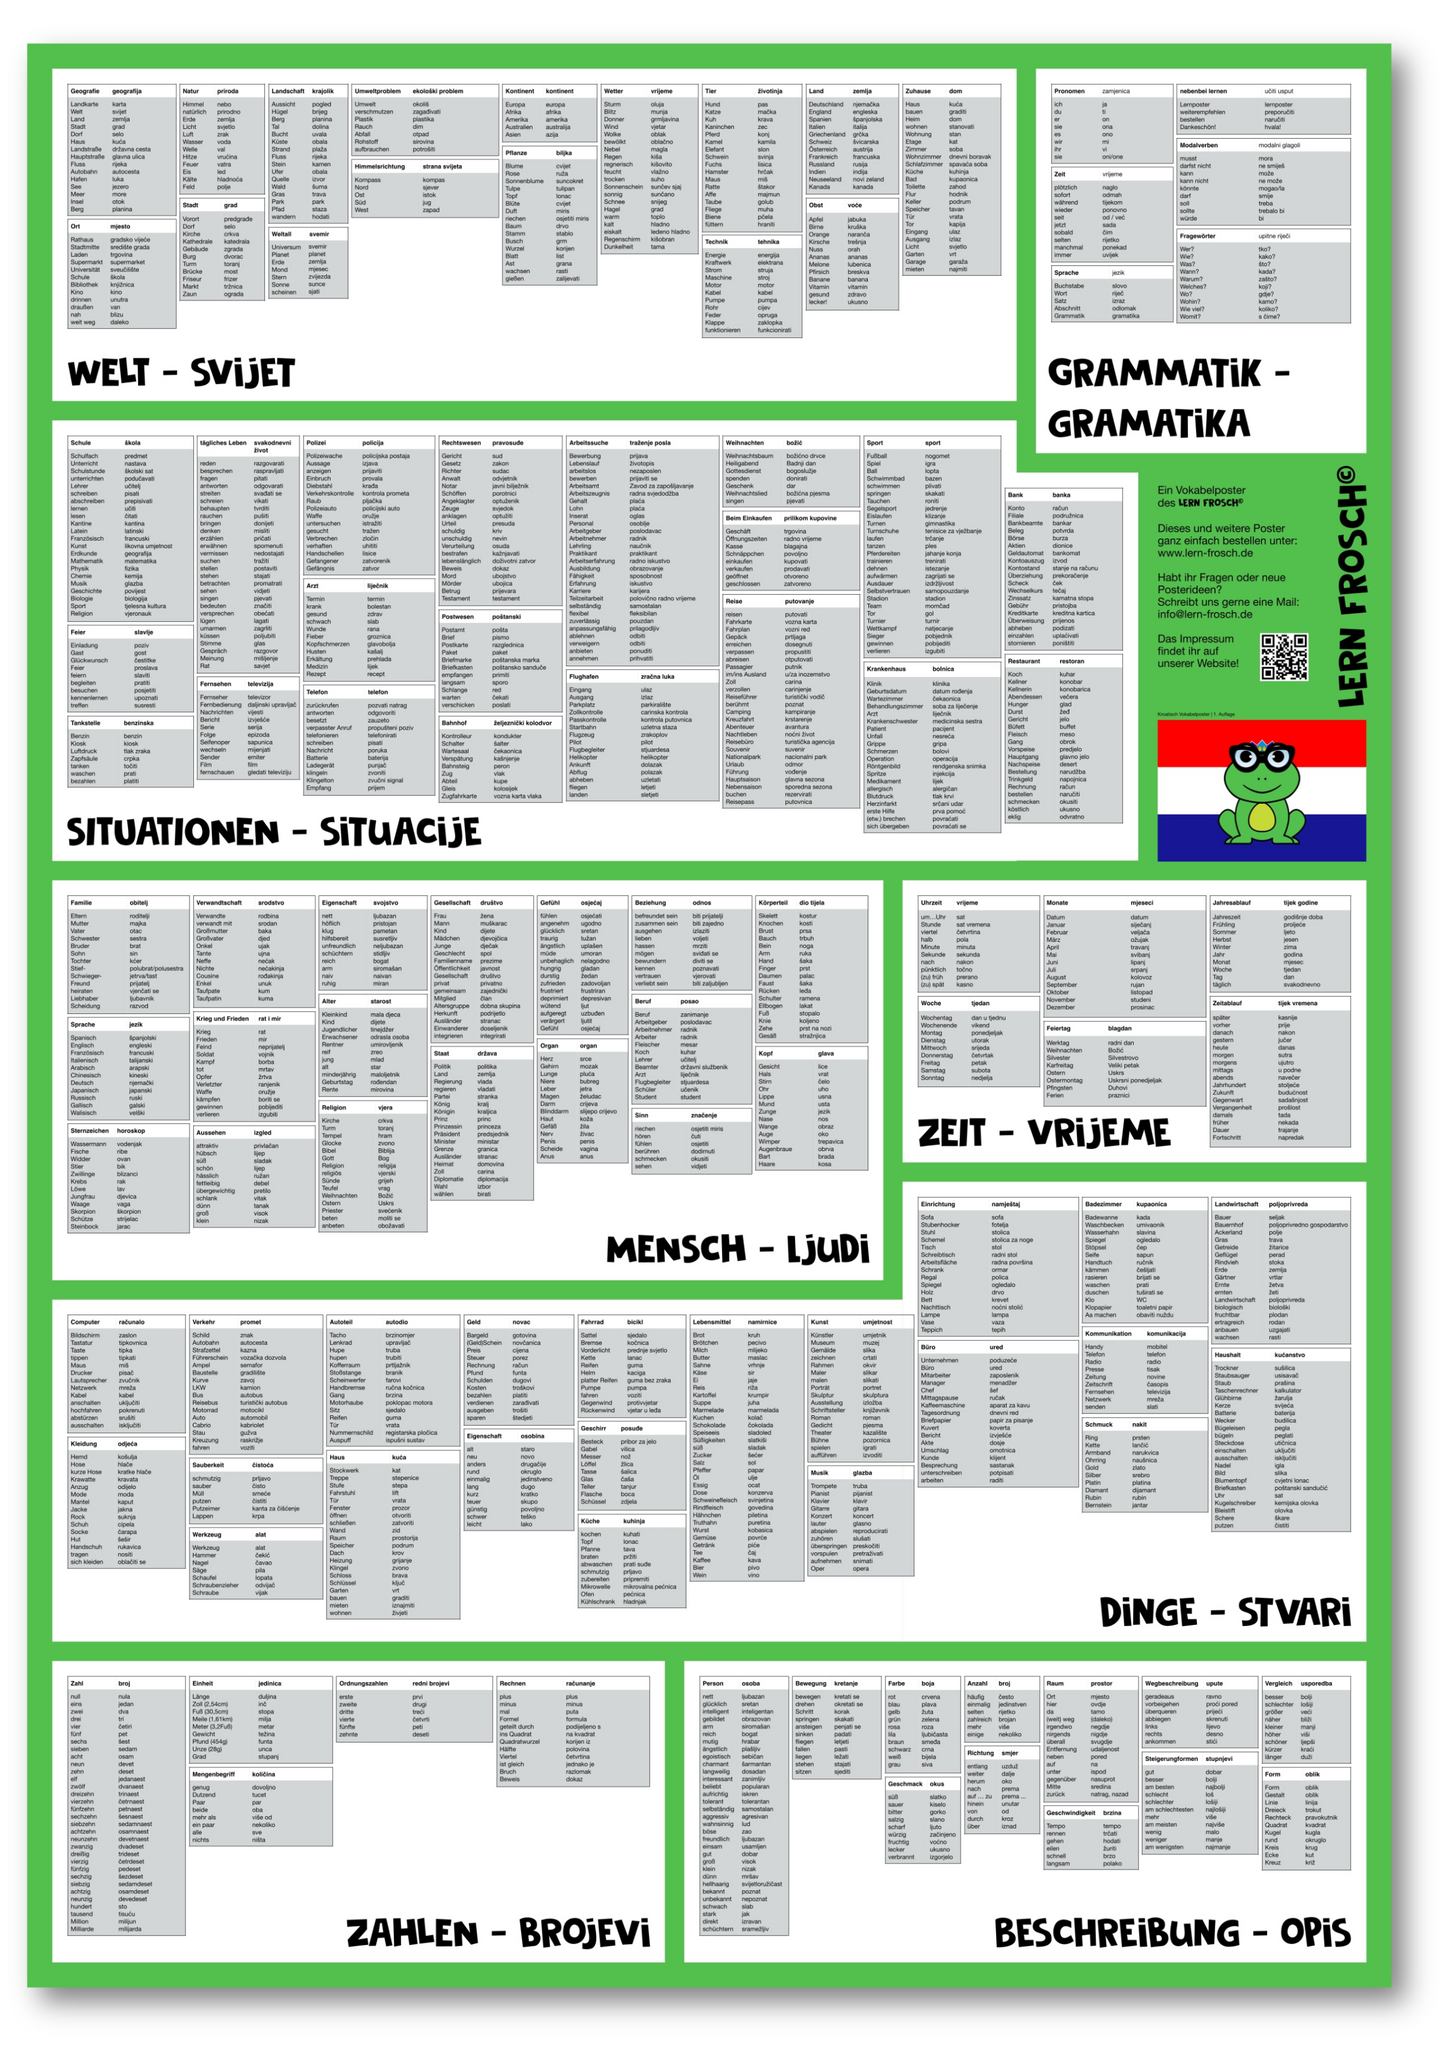 Lern Frosch® Kroatisch häufigsten Wortschatz lernen | Vokabelposter für Anfänger & Fortgeschrittene | 1.500+ Vokabeln lernen